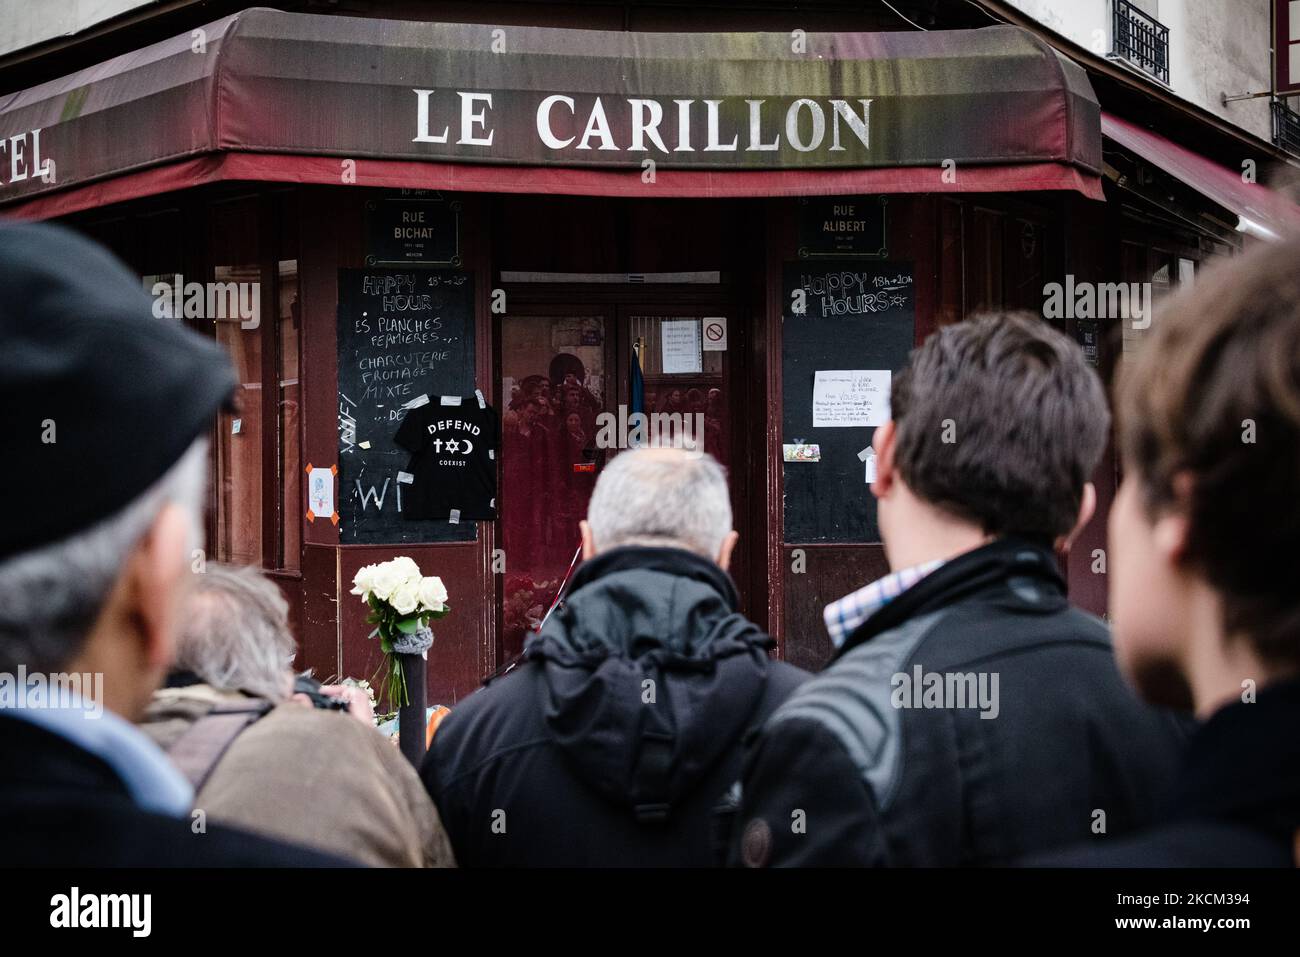 Sur 16 novembre 2015, trois jours après les attaques de 13 novembre 2015 qui ont tué 130 personnes et en ont blessé plus de 400 dans une série d'attaques qui ont frappé plusieurs endroits à Paris, dont le Stade de France, terrasses de café et salle de concert Bataclan l'émotion est à son apogée dans les rues de Paris, comme ici en face de la terrasse du restaurant 'le carillon' où les passants se rassemblent et jettent des fleurs, bougies et messages en hommage aux victimes devant l'un des lieux des attaques encore marqués par l'impact des balles. (Photo de Samuel Boivin/NurPhoto) Banque D'Images